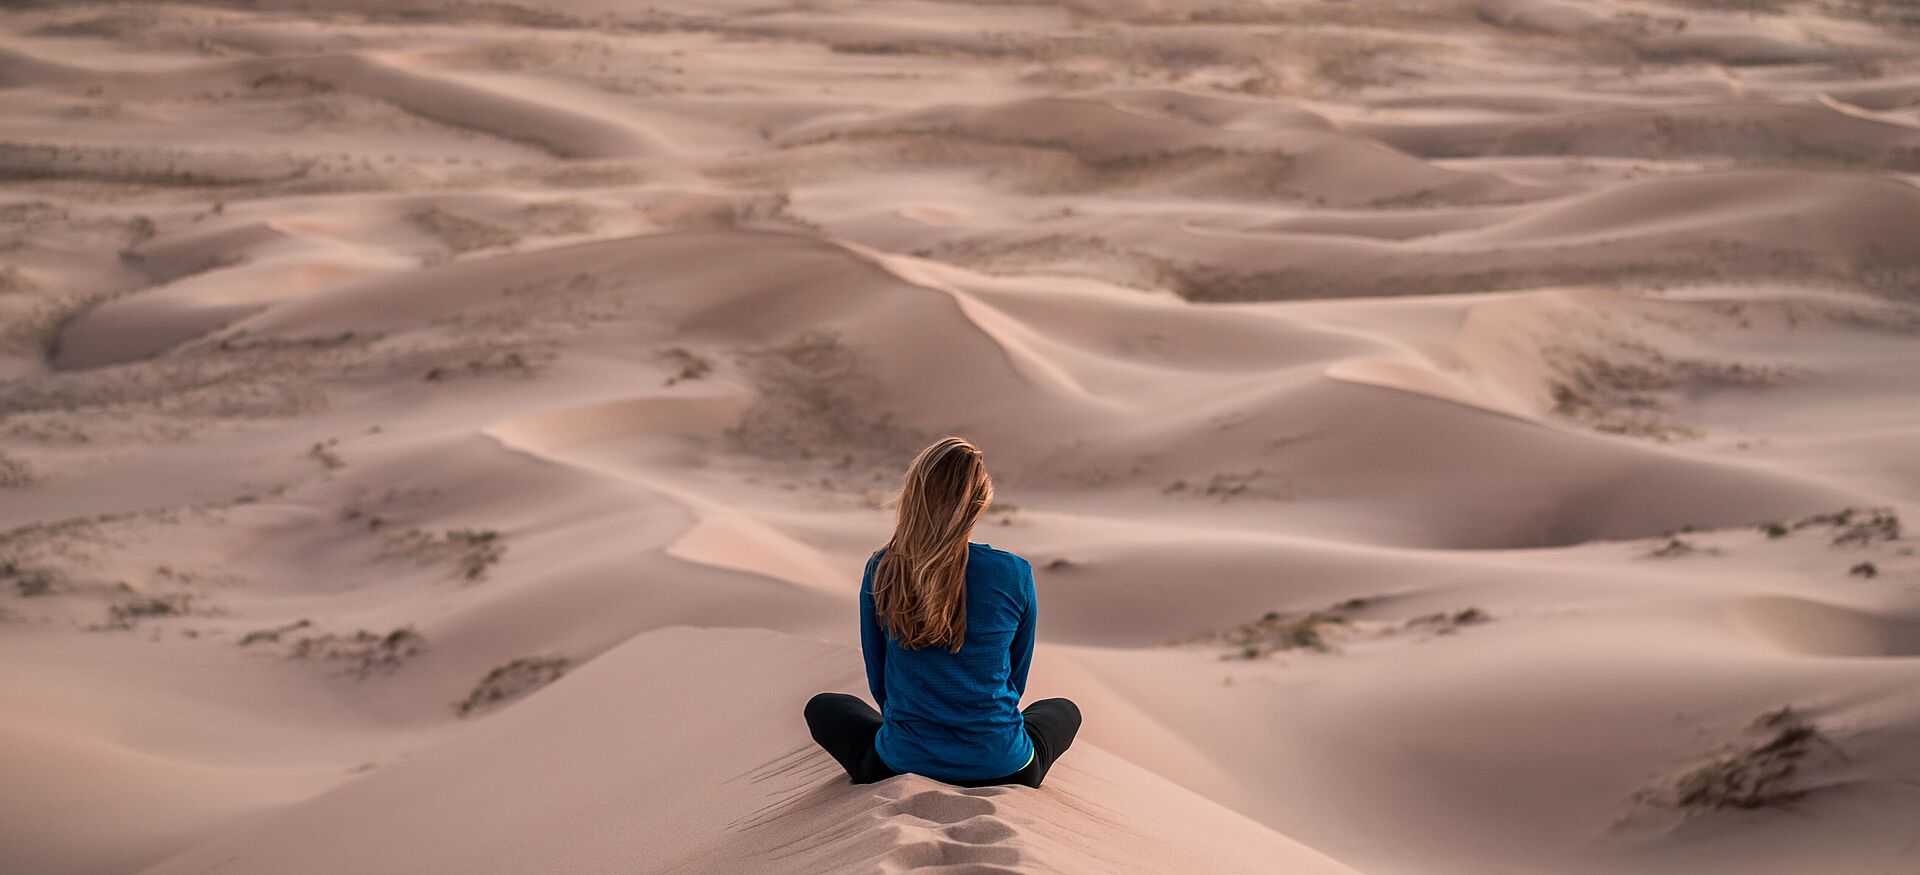 Eine Frau sitzt in der Wüste